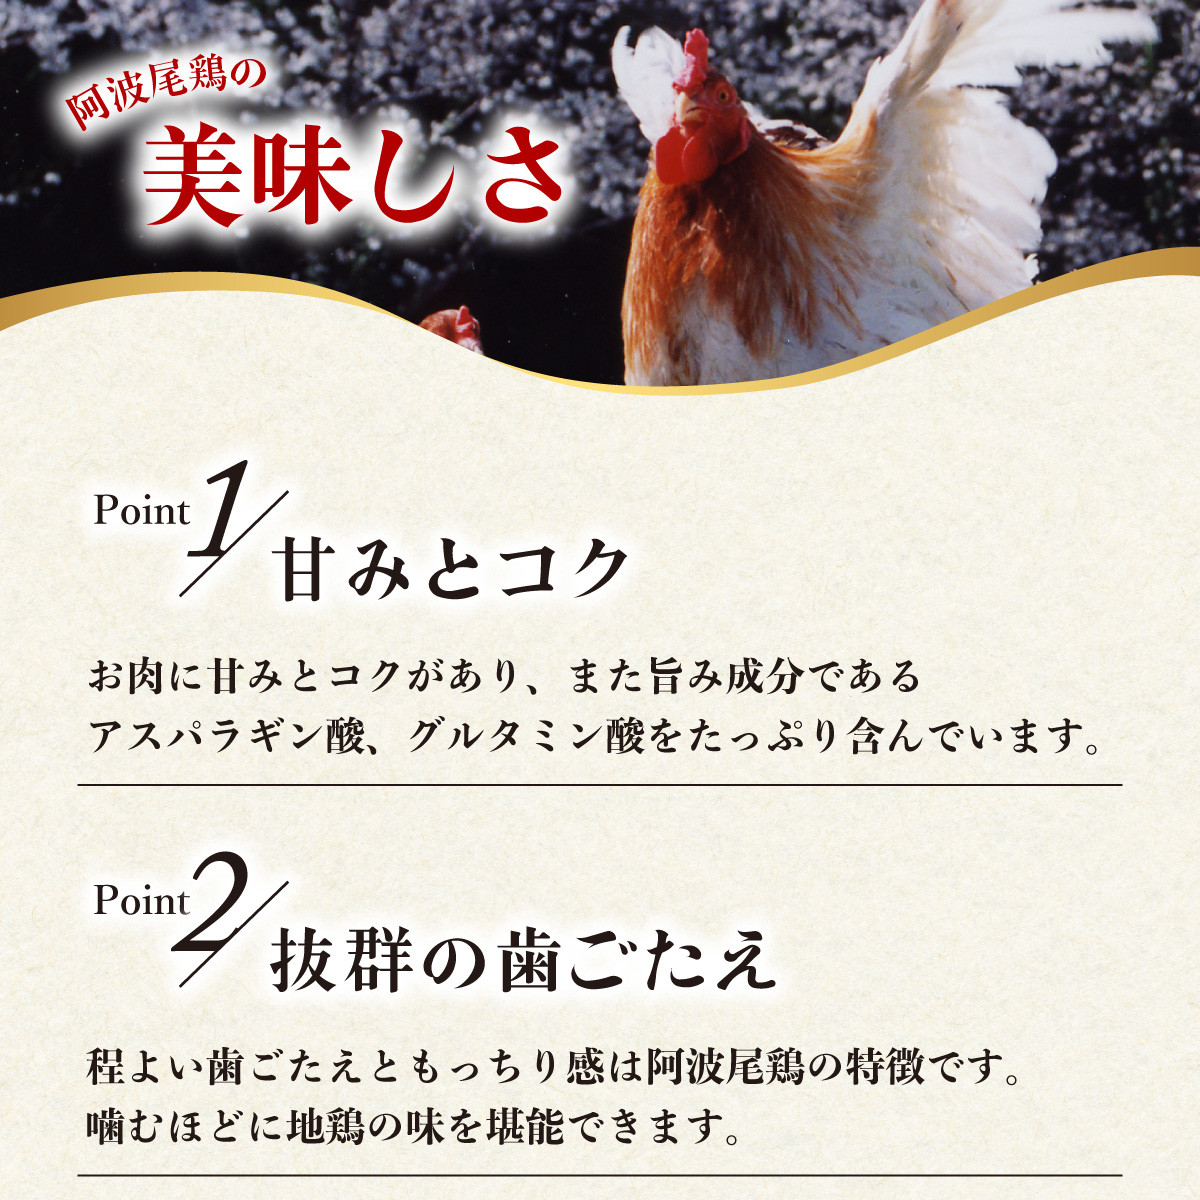 【阿波尾鶏バラ凍結定期便 12か月連続】阿波尾鶏 もも肉 切り身 バラ凍結 3kg×12回 計36kg 鶏肉 鶏もも 阿波尾鶏 冷凍 地鶏